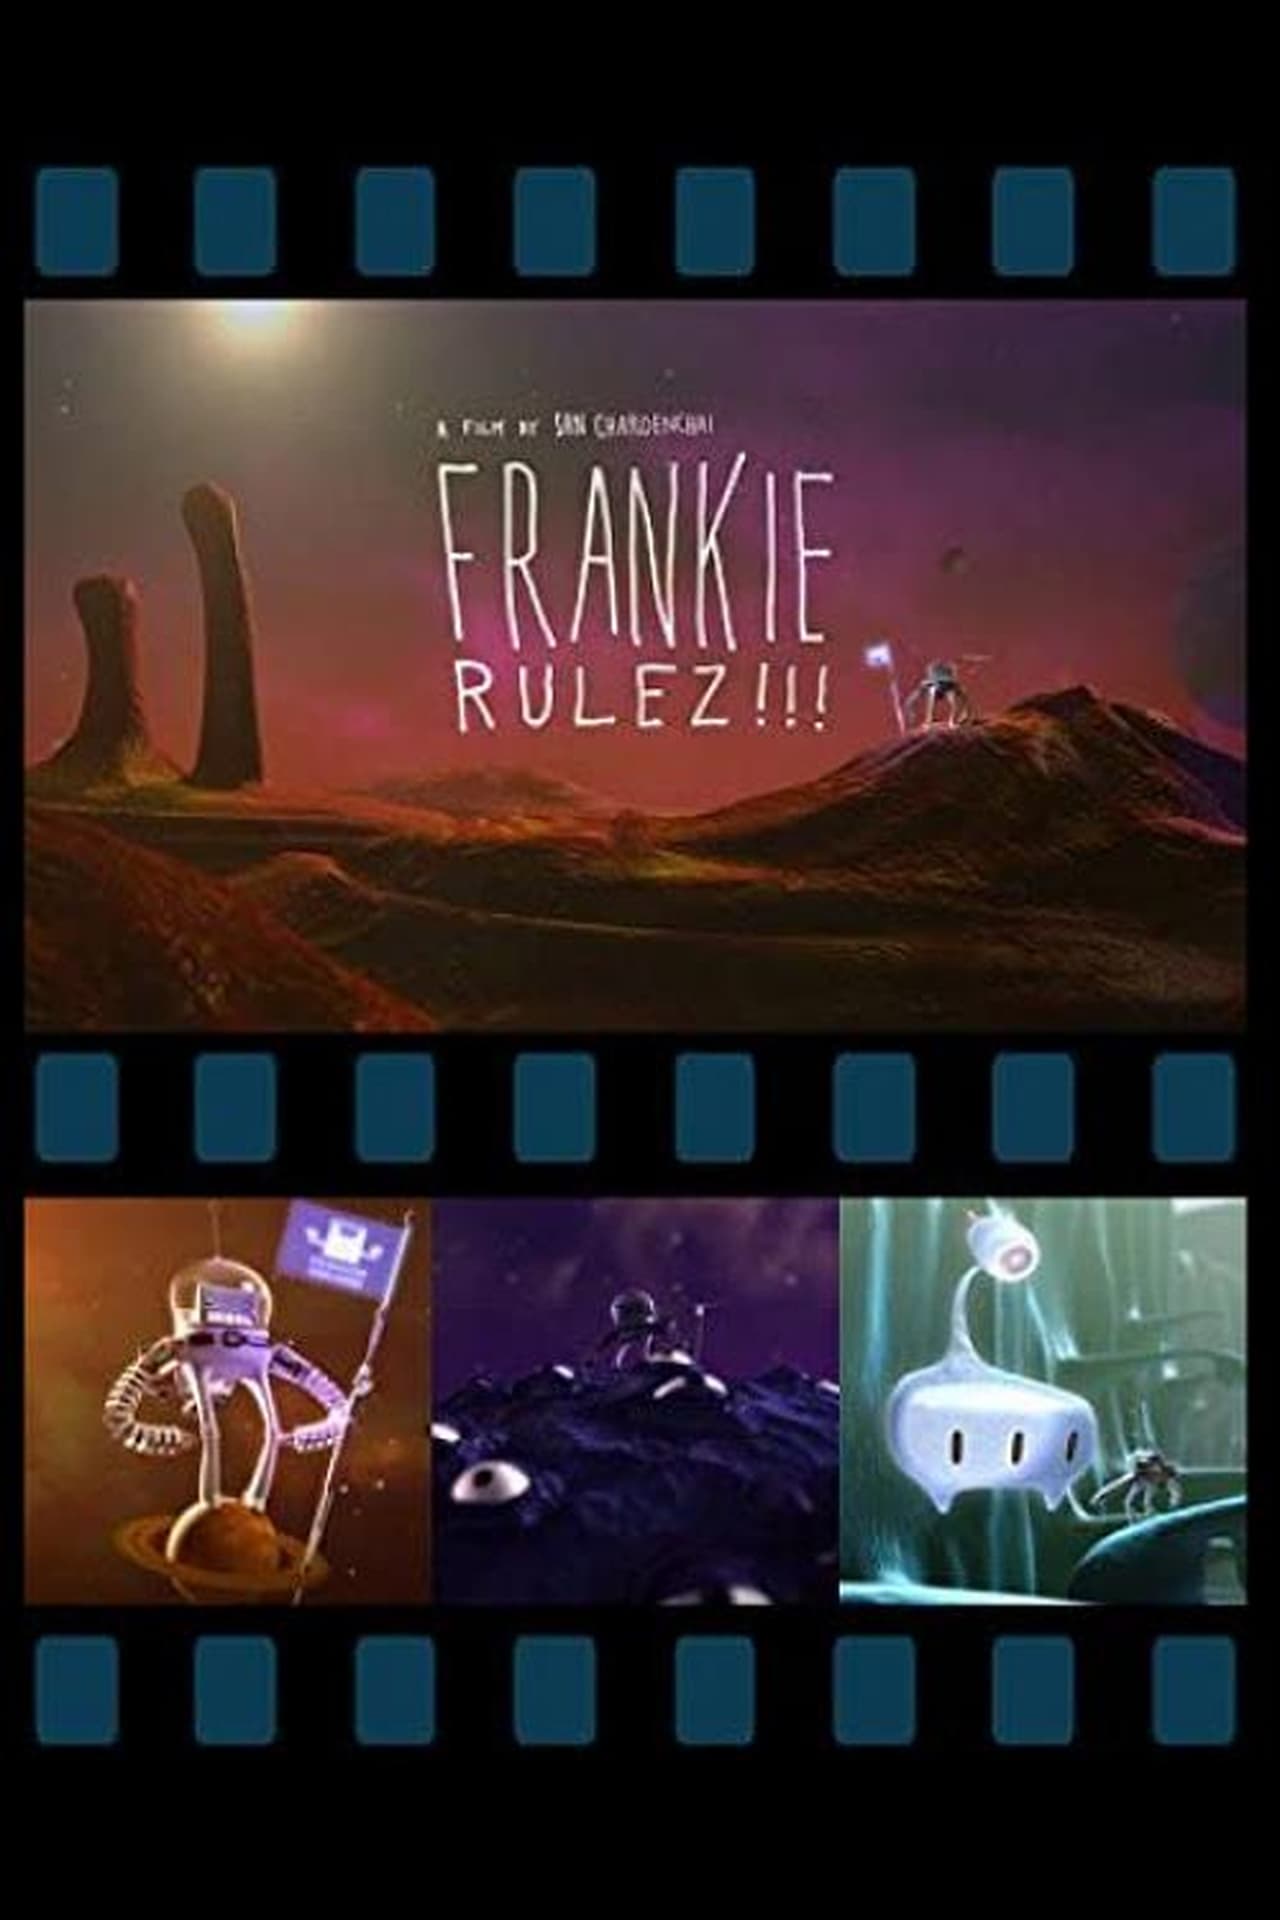 Frankie Rulez!!!